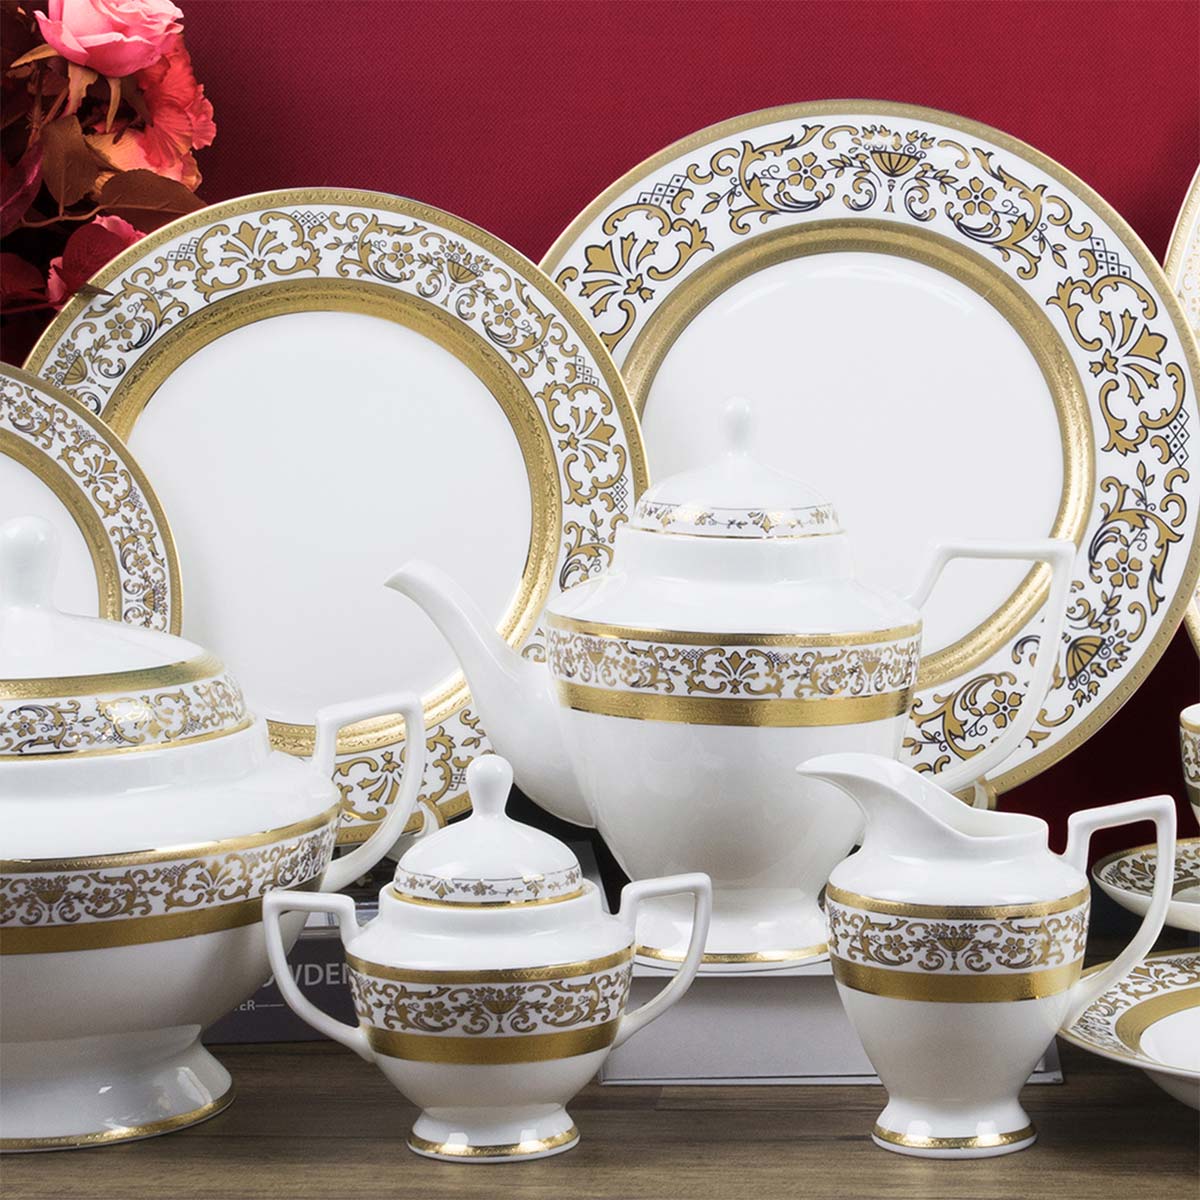 Servizio piatti importante decorato in oro con incisione fine porcellana - Prestige